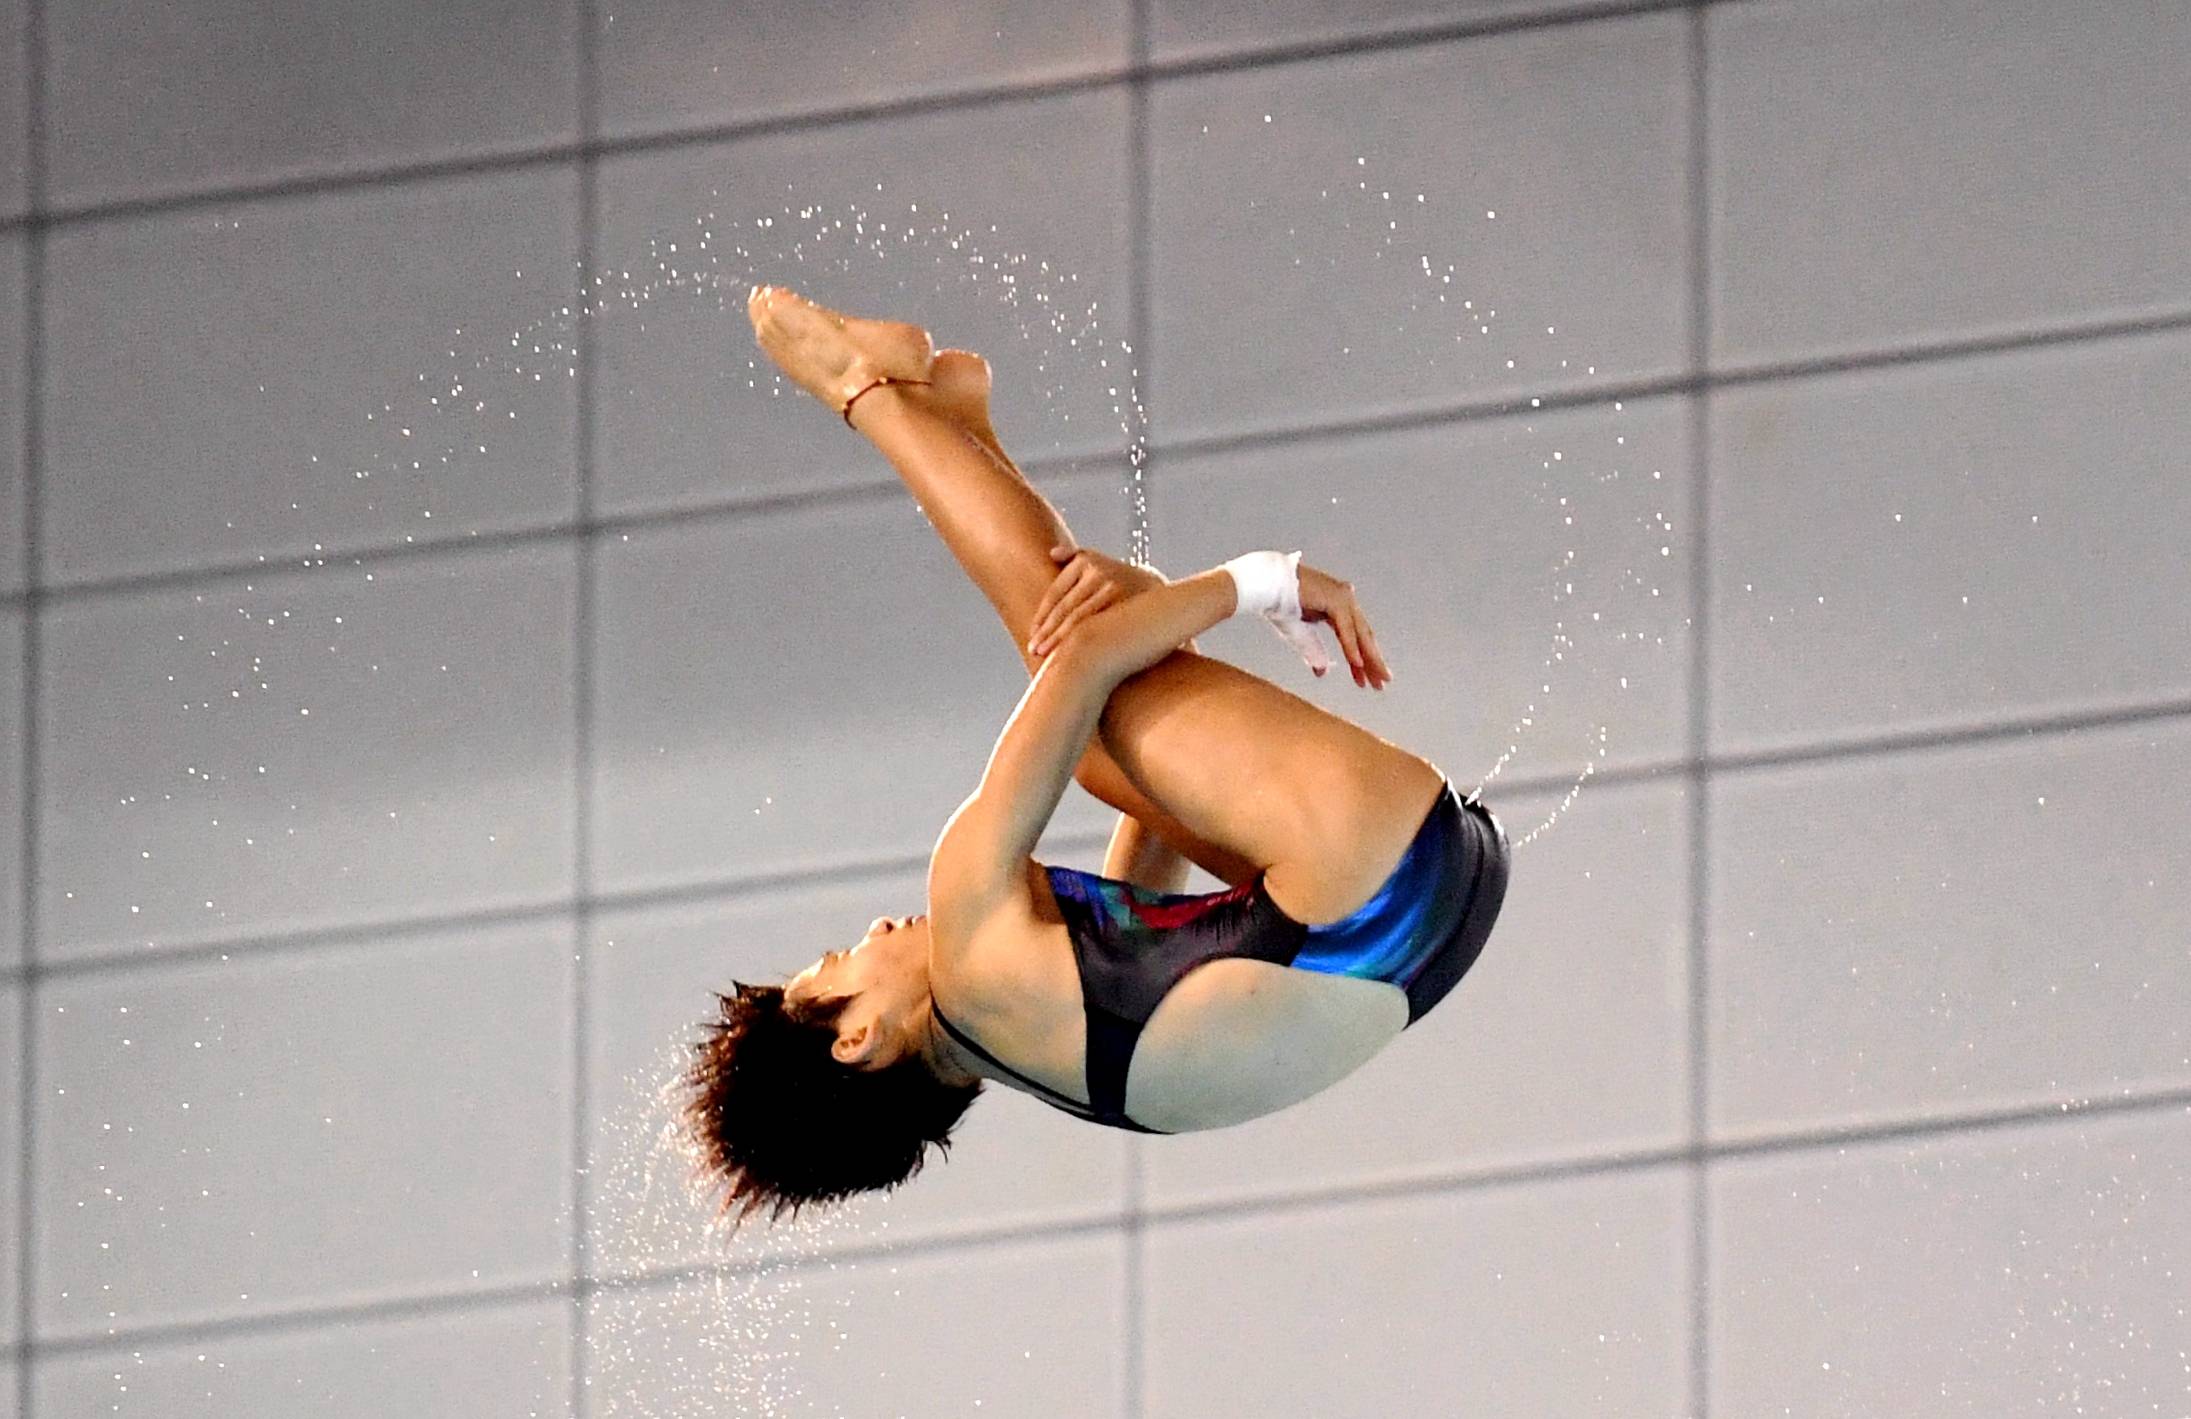 2010年跳水照片图片